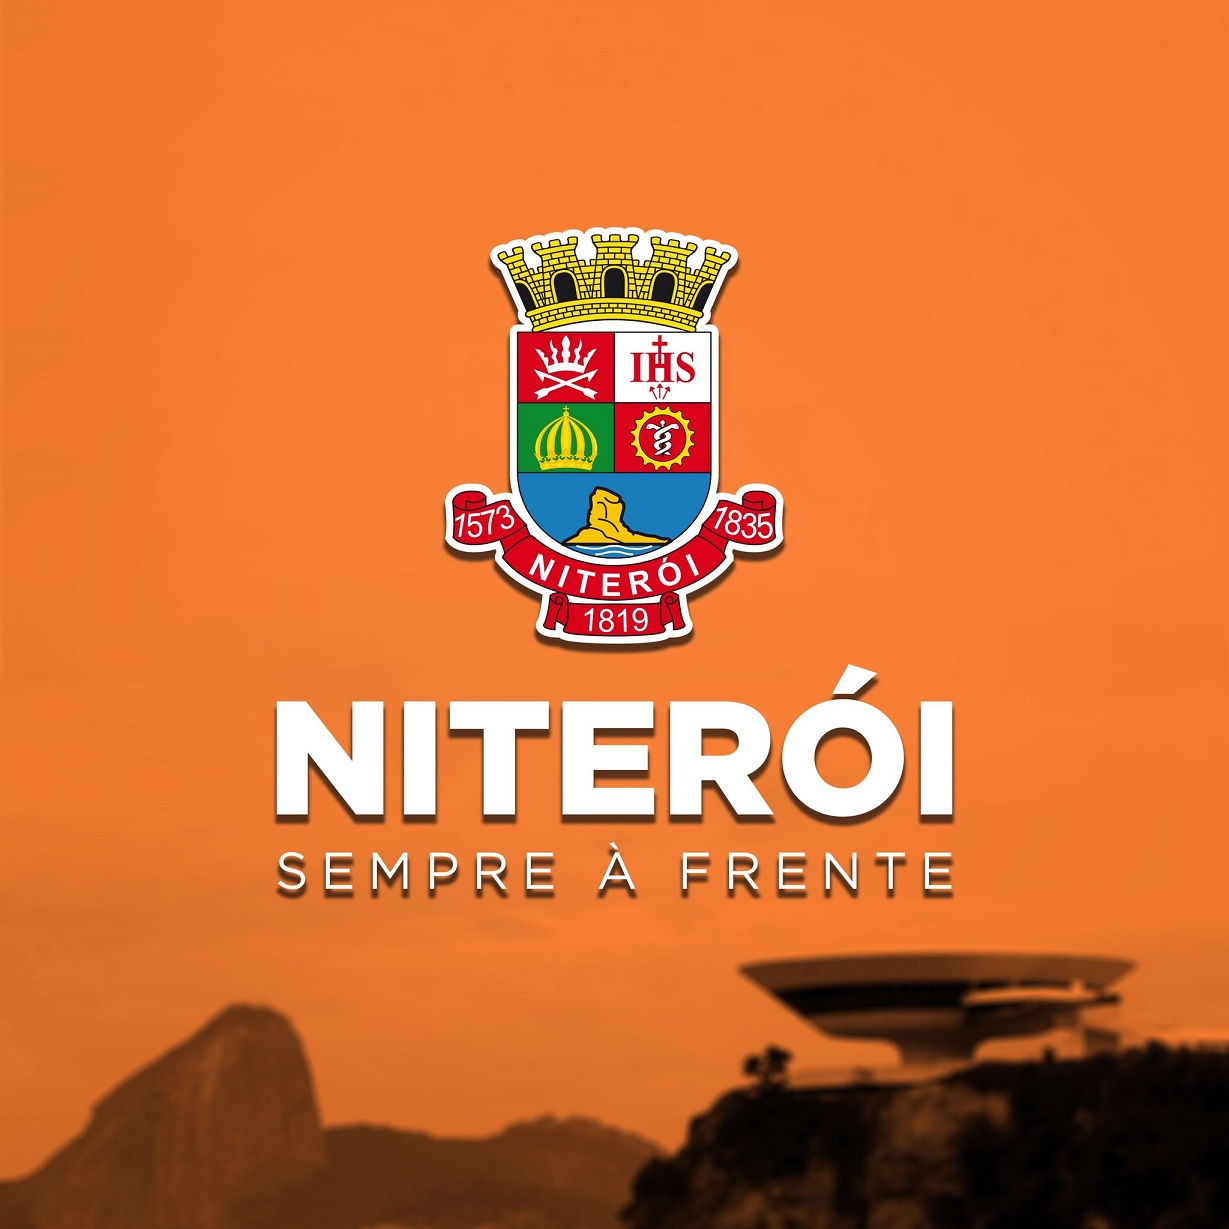 MEI Niterói: notas fiscais pelo Sistema Nacional de NFS-e entra em vigor na  segunda-feira (3)